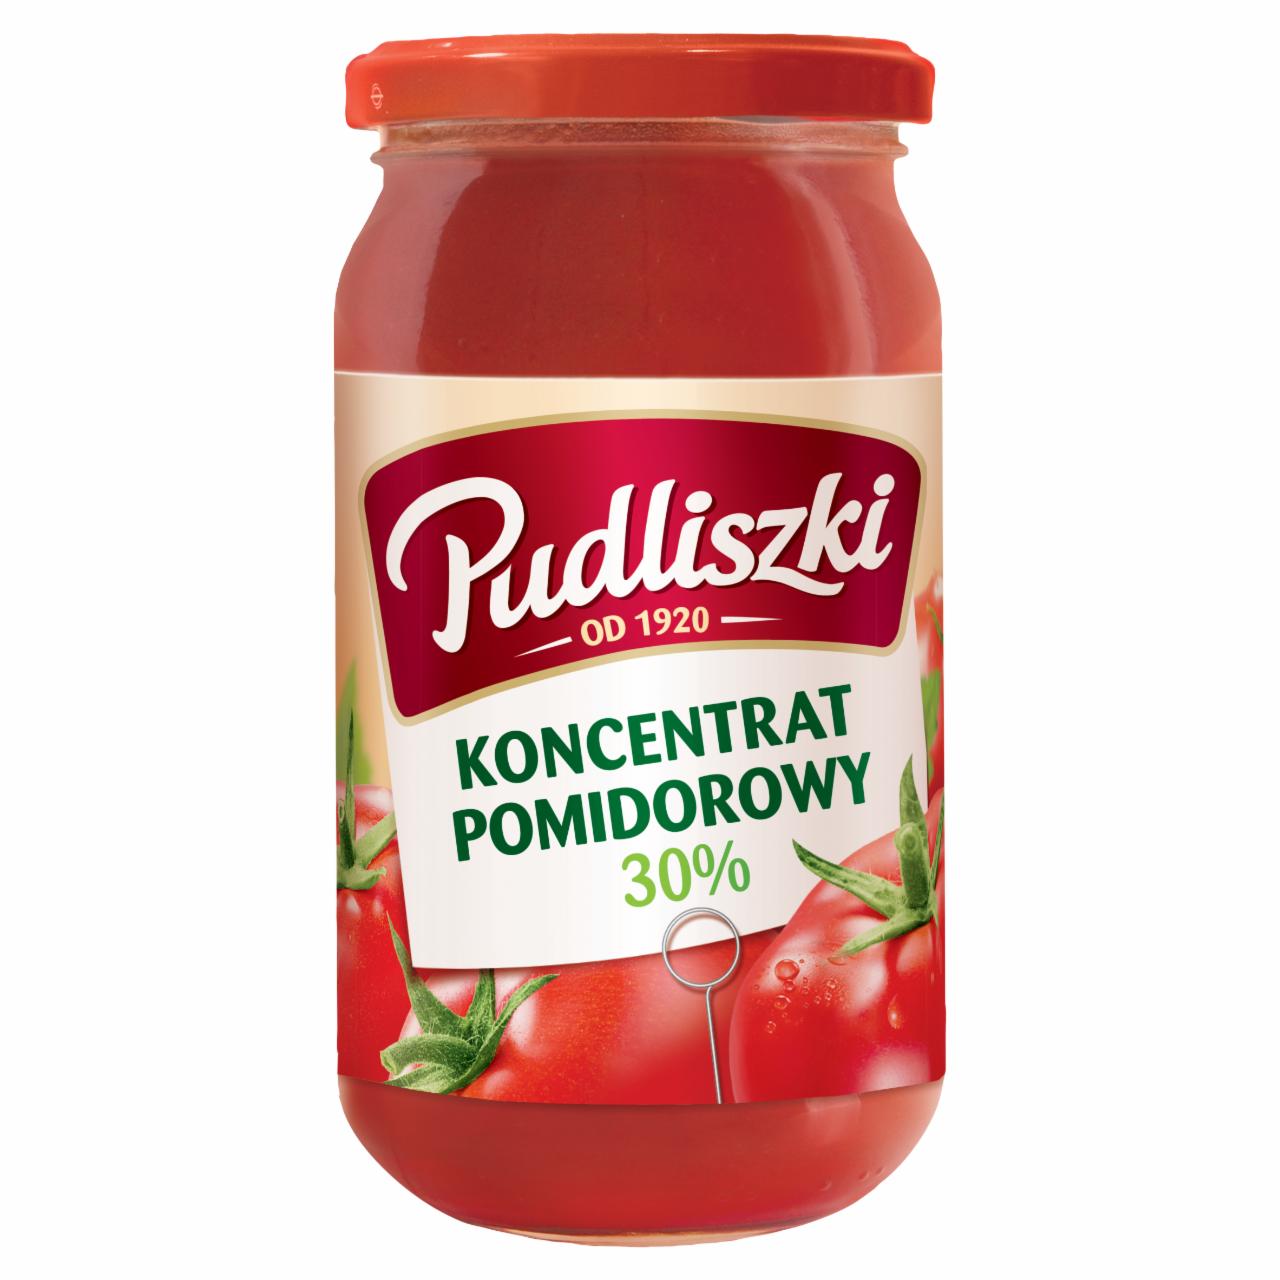 Zdjęcia - Pudliszki Koncentrat pomidorowy 30% 380 g